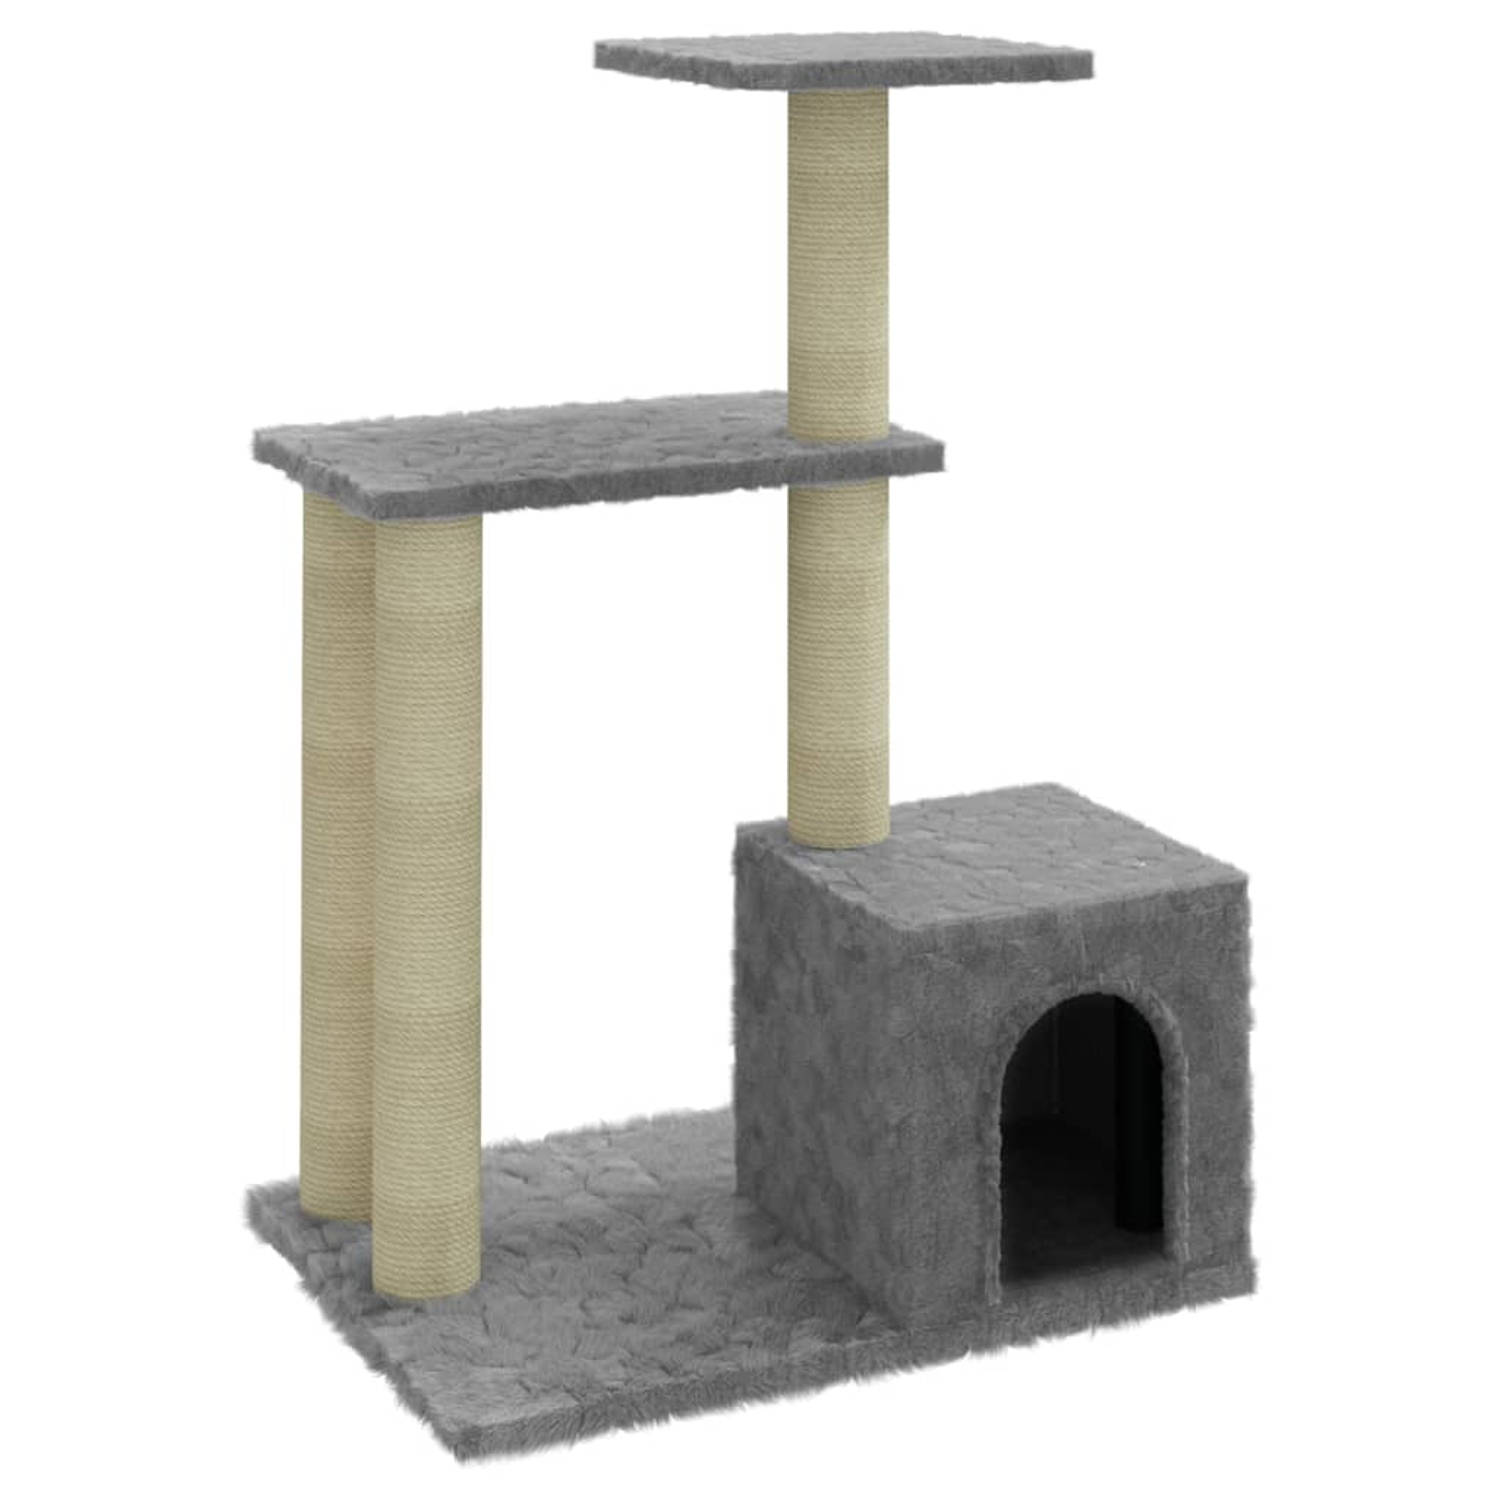 The Living Store Kattenmeubel met sisal krabpalen 71 cm lichtgrijs - Krabpaal